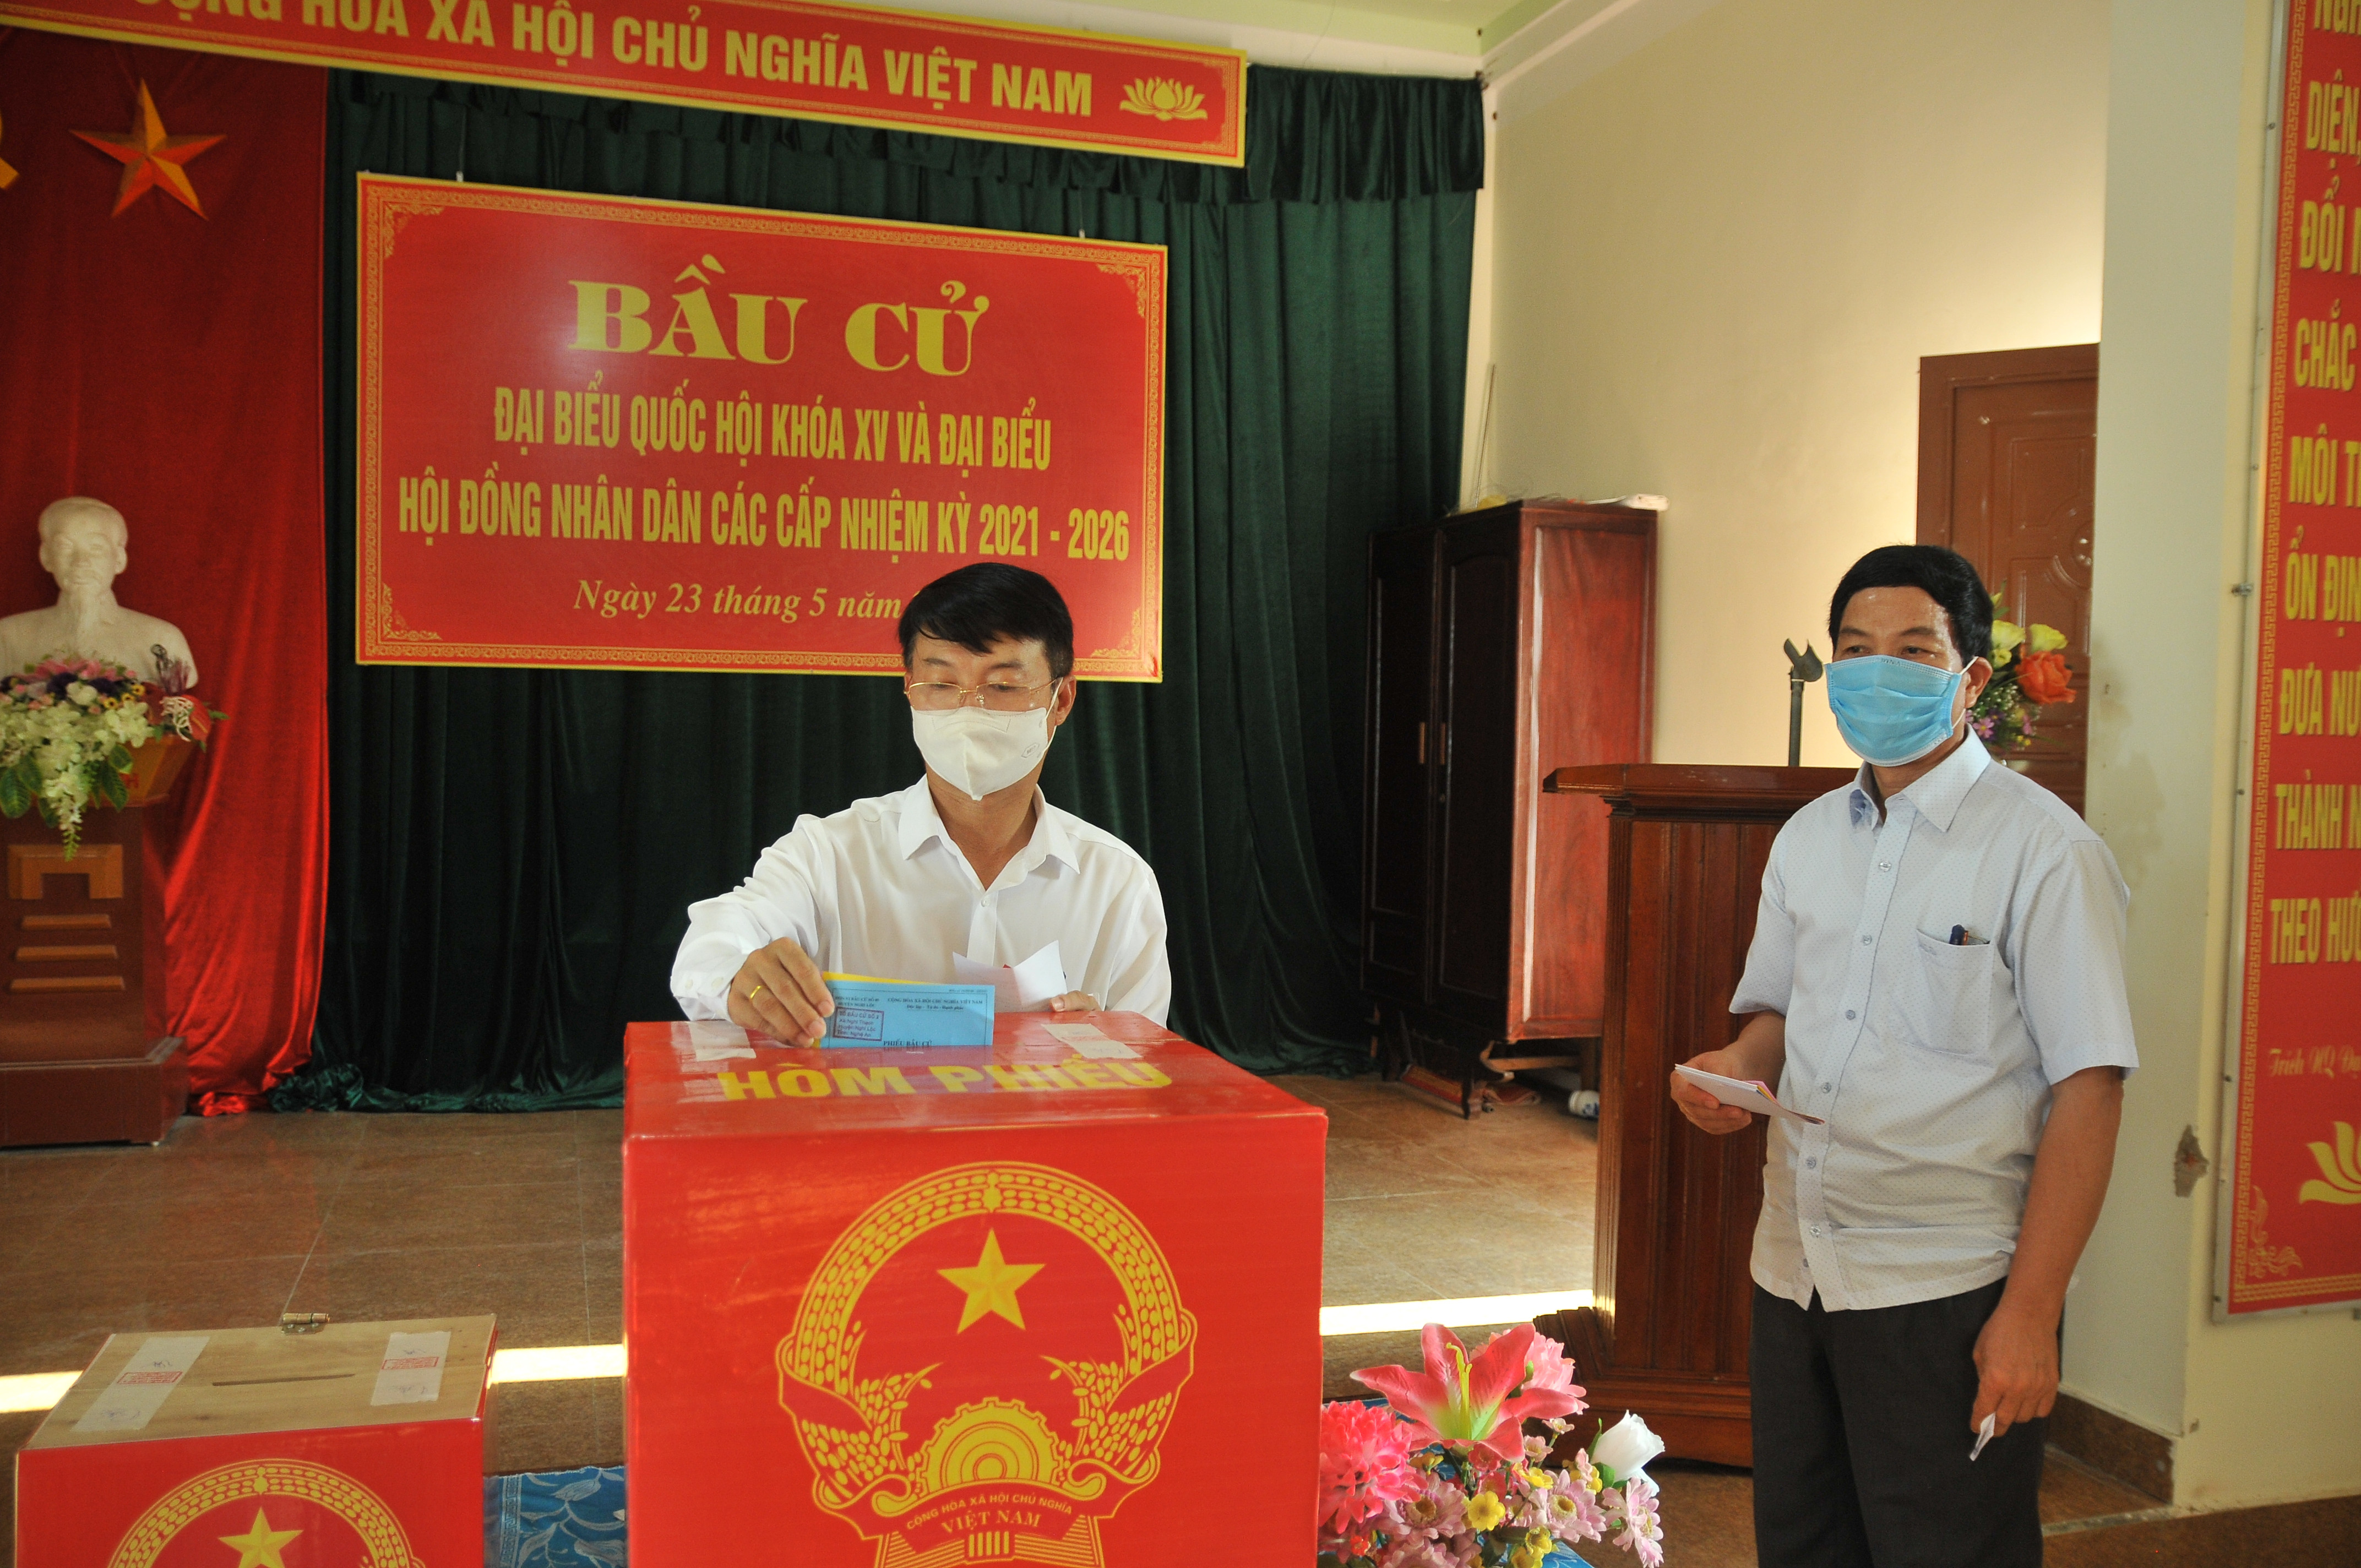 Ông Nguyễn Tiến Dũng - Chủ tịch Ủy ban bầu cử huyện Nghi Lộc bỏ phiếu tại nơi cư trú. Ảnh: Tiến Đông